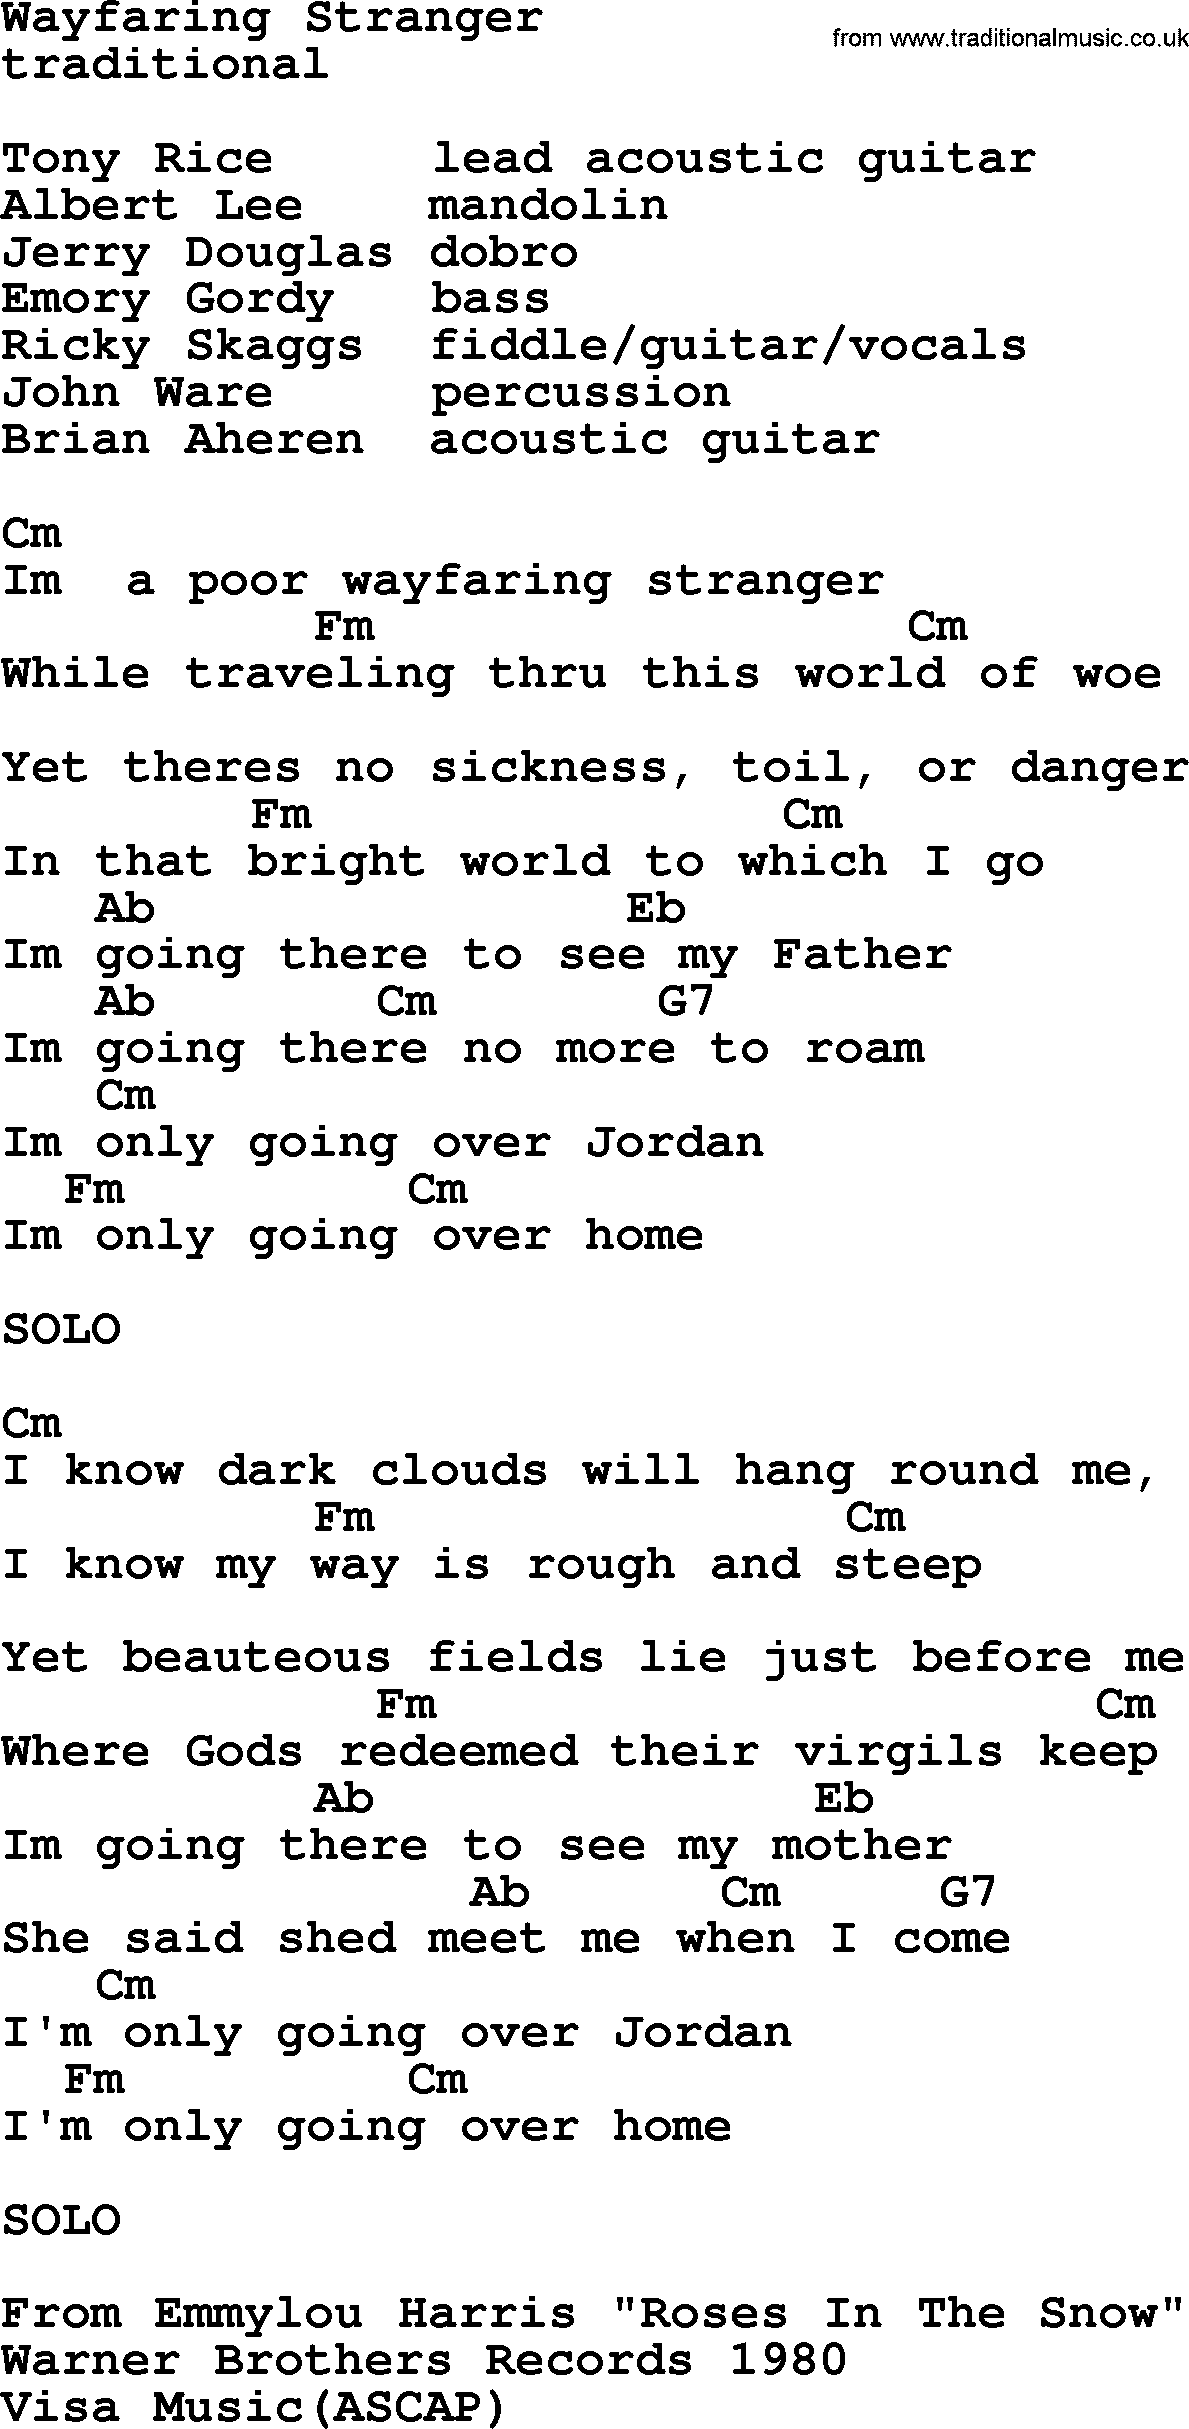 Emmylou Harris song: Wayfaring Stranger lyrics and chords